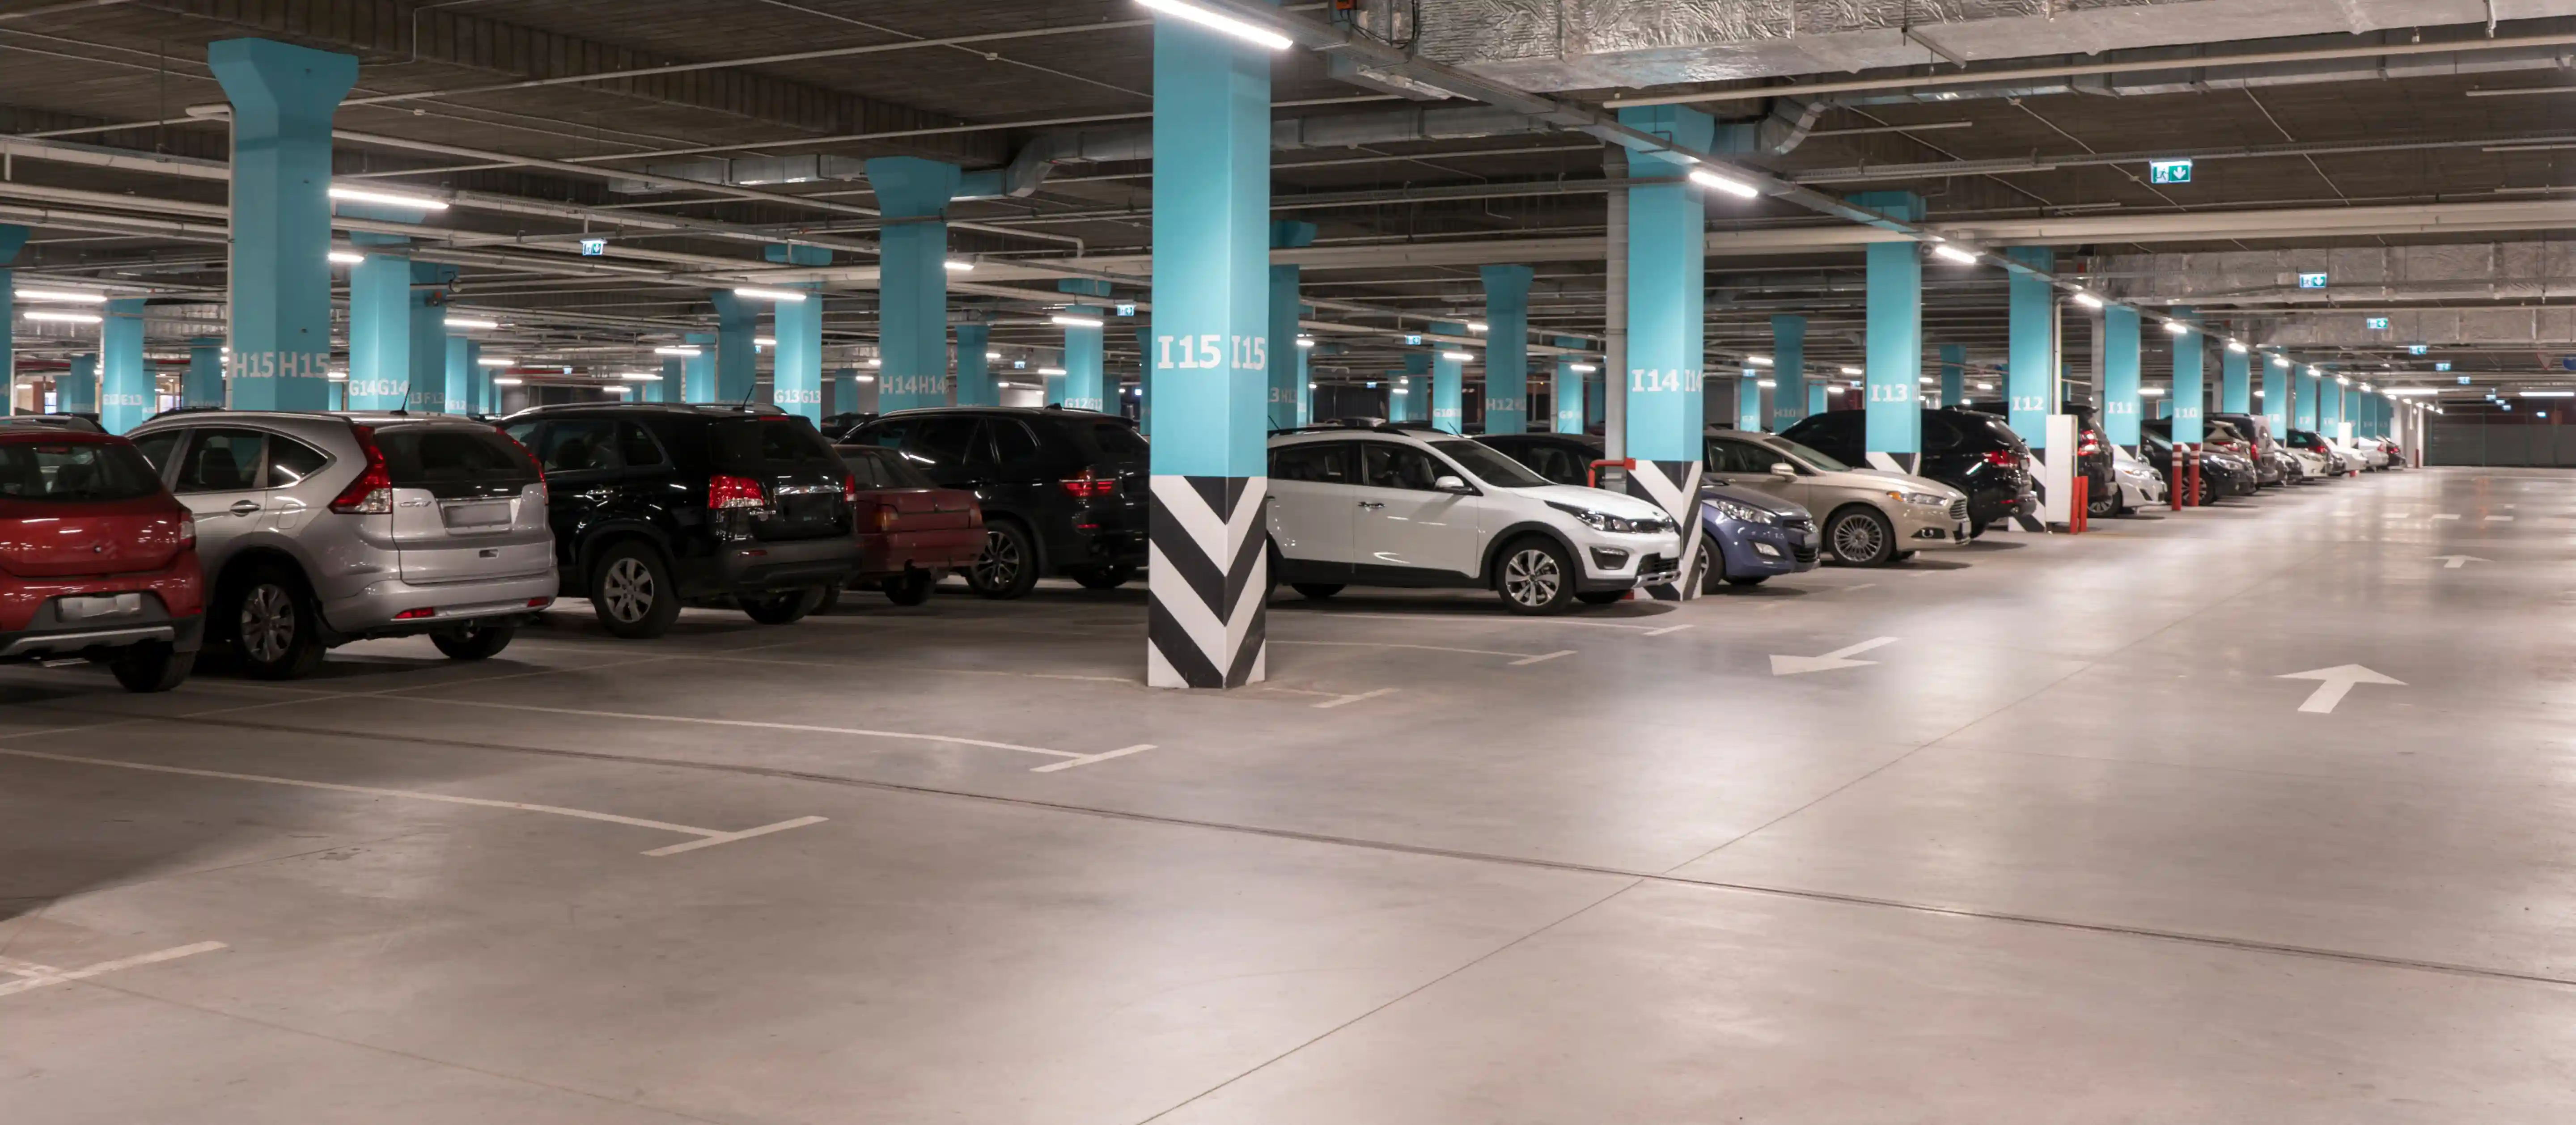 Parking couvert avec voitures